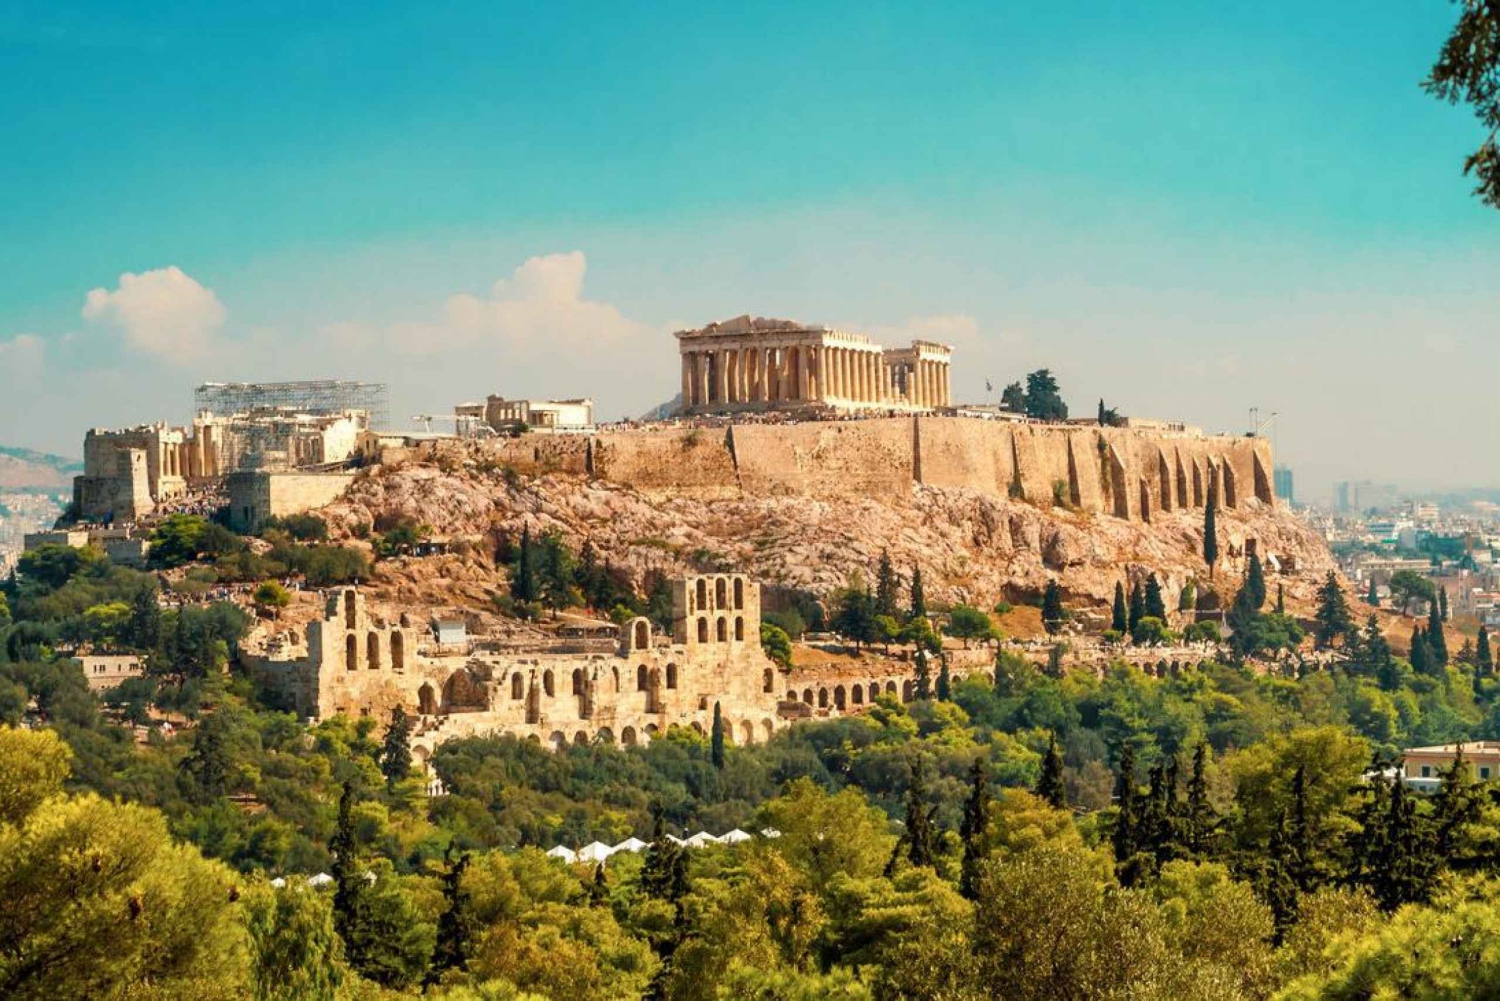 Athen: Private ganztägige Sightseeing-Tour